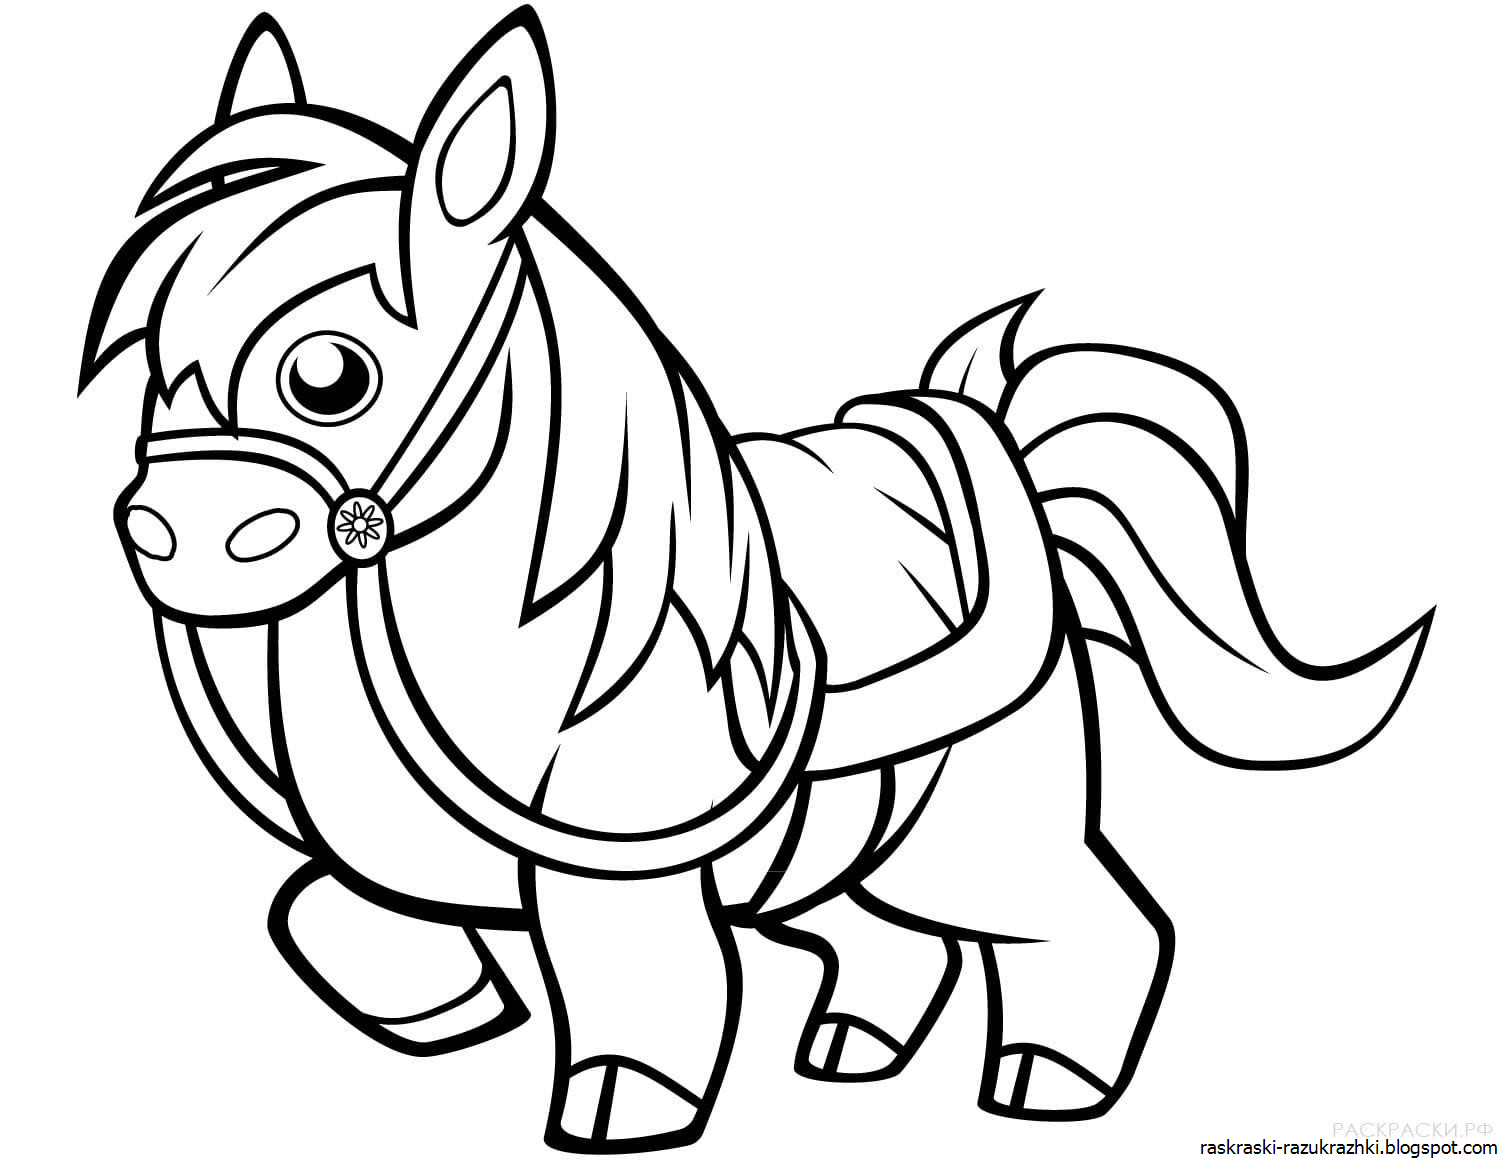 Раскрасить лошадку. Раскраска. Лошадка. Лошадка раскраска для детей. Раскраска лошадка пони. Лошадь раскраска для детей.